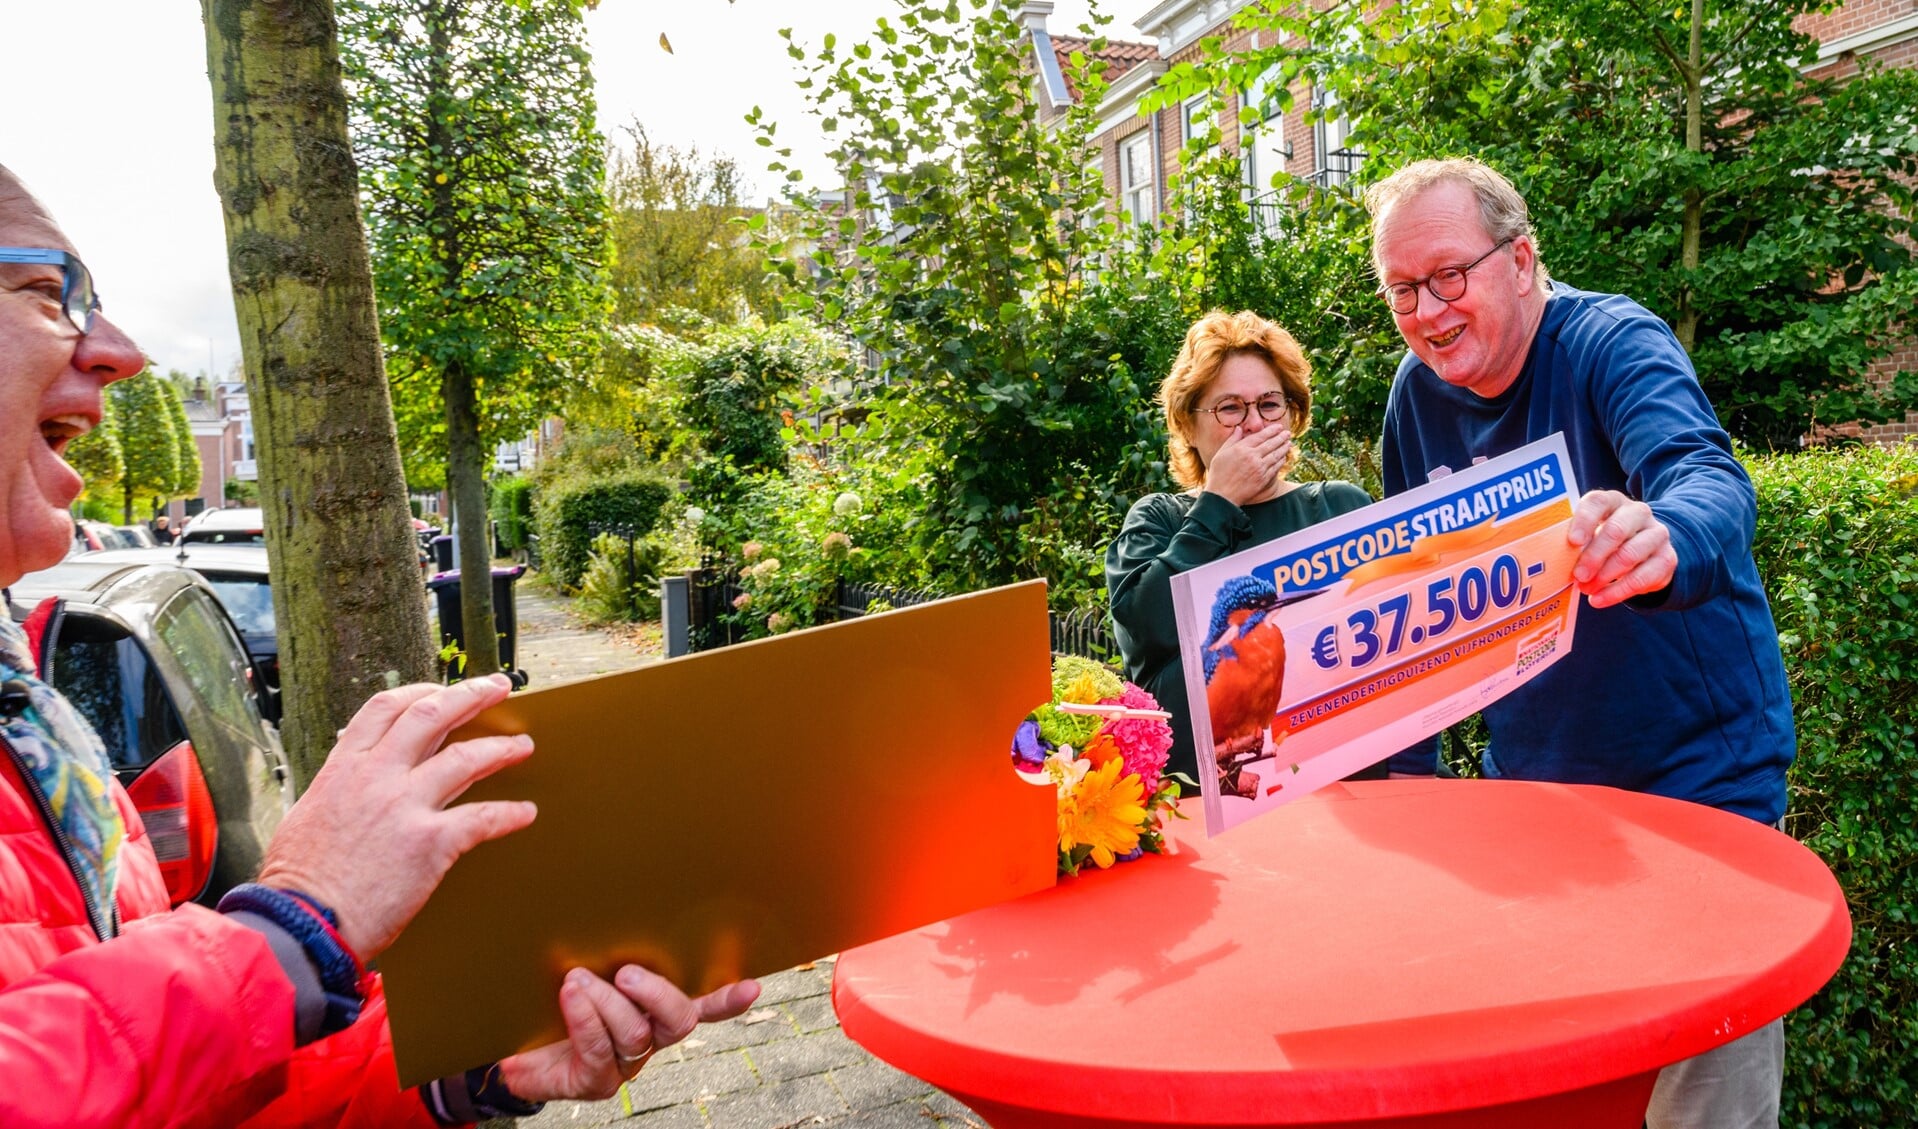 Karin en Philip uit Voorburg winnen 37.500 euro bij Postcode Loterij (foto: Roy Beusker). .